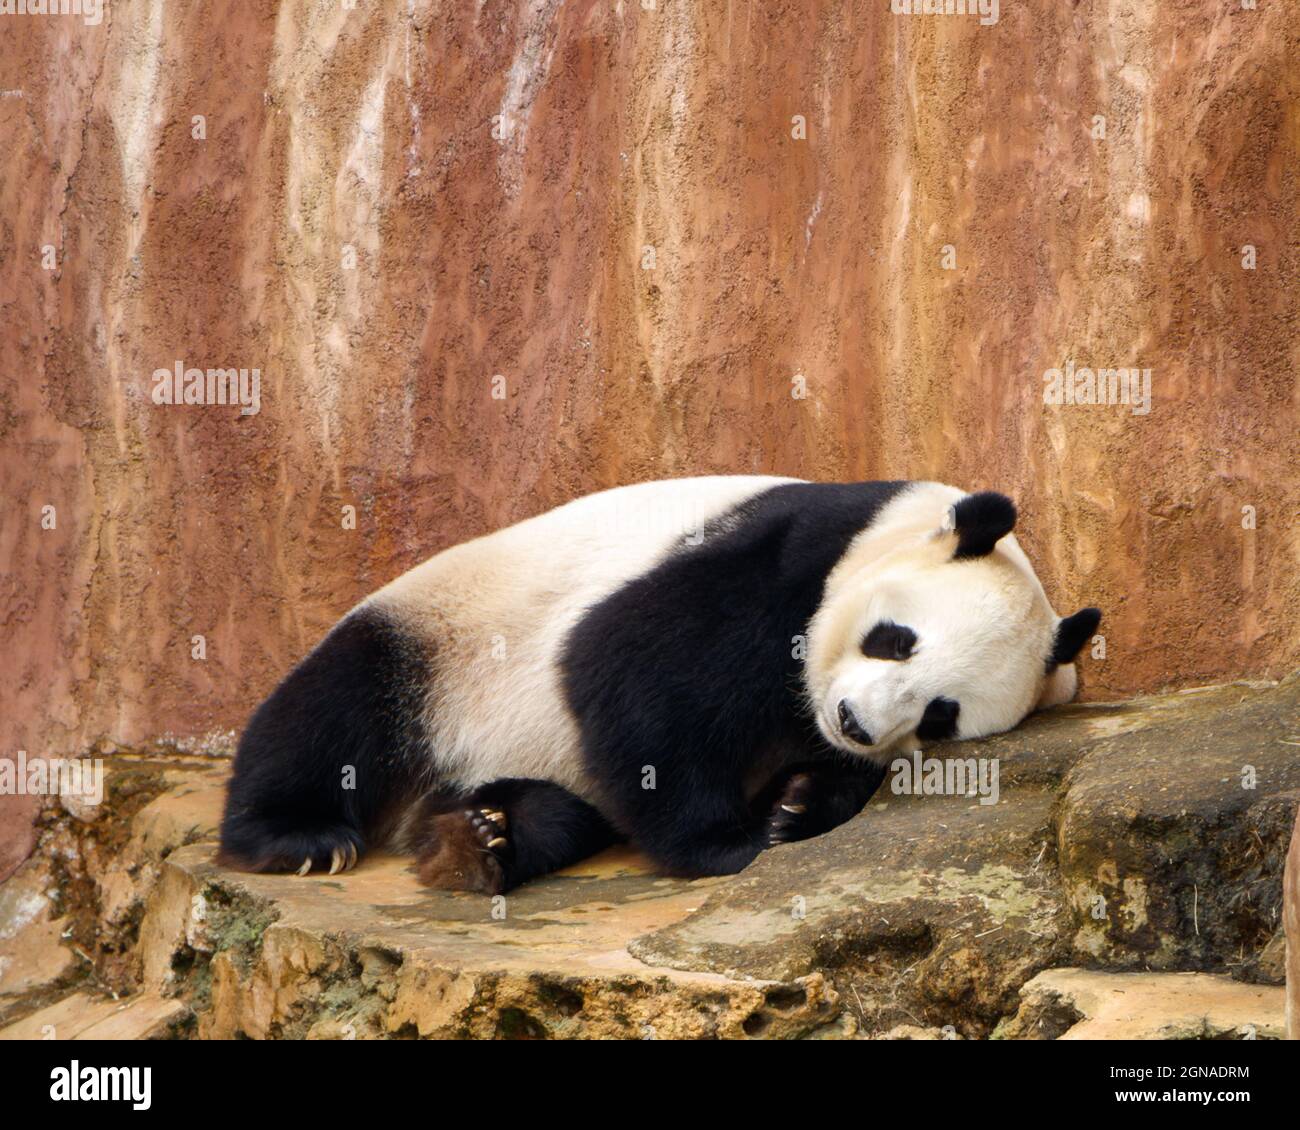 A giant panda (Ailuropoda melanoleuca) also needs a nap. Stock Photo